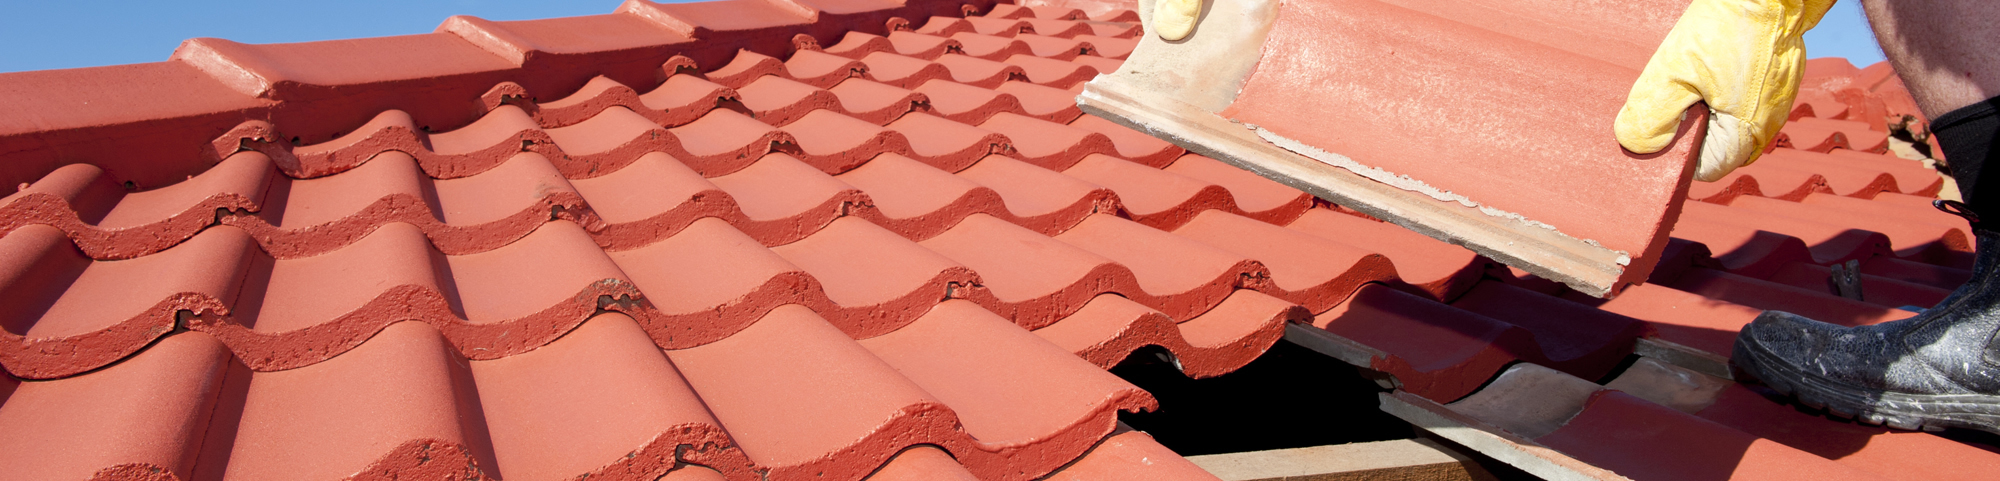 Wir sind Ihre Dachdecker für Photovoltaik, Dachstuhlarbeiten & Dachentwässerung in Leipzig 